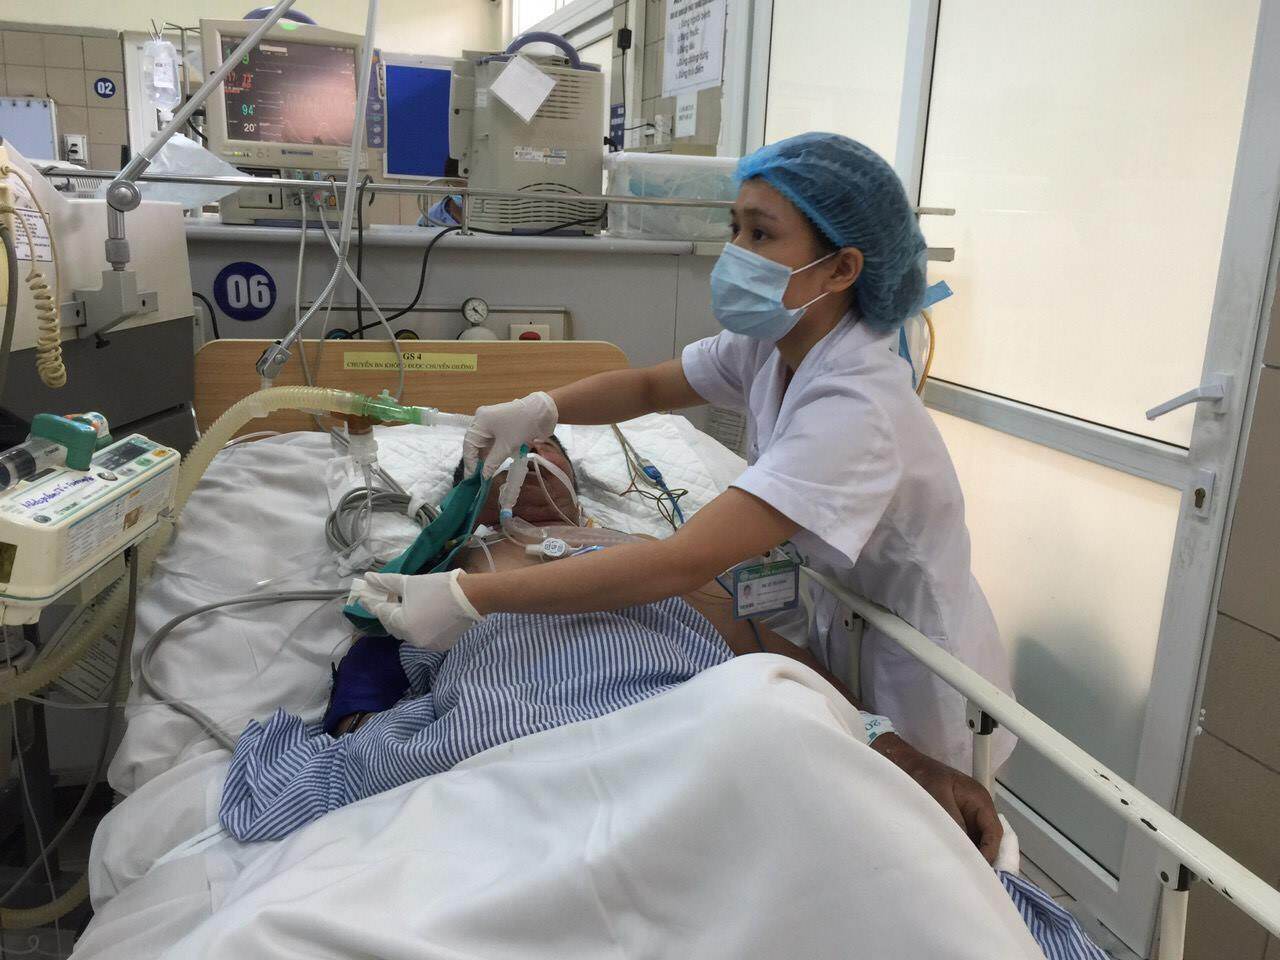 Giám đốc BV ĐH Y Hà Nội vừa có cảnh báo liên tiếp ca bệnh nặng nhập viện nguyên nhân do chậm trễ thăm khám vì lo ngại Covid-19